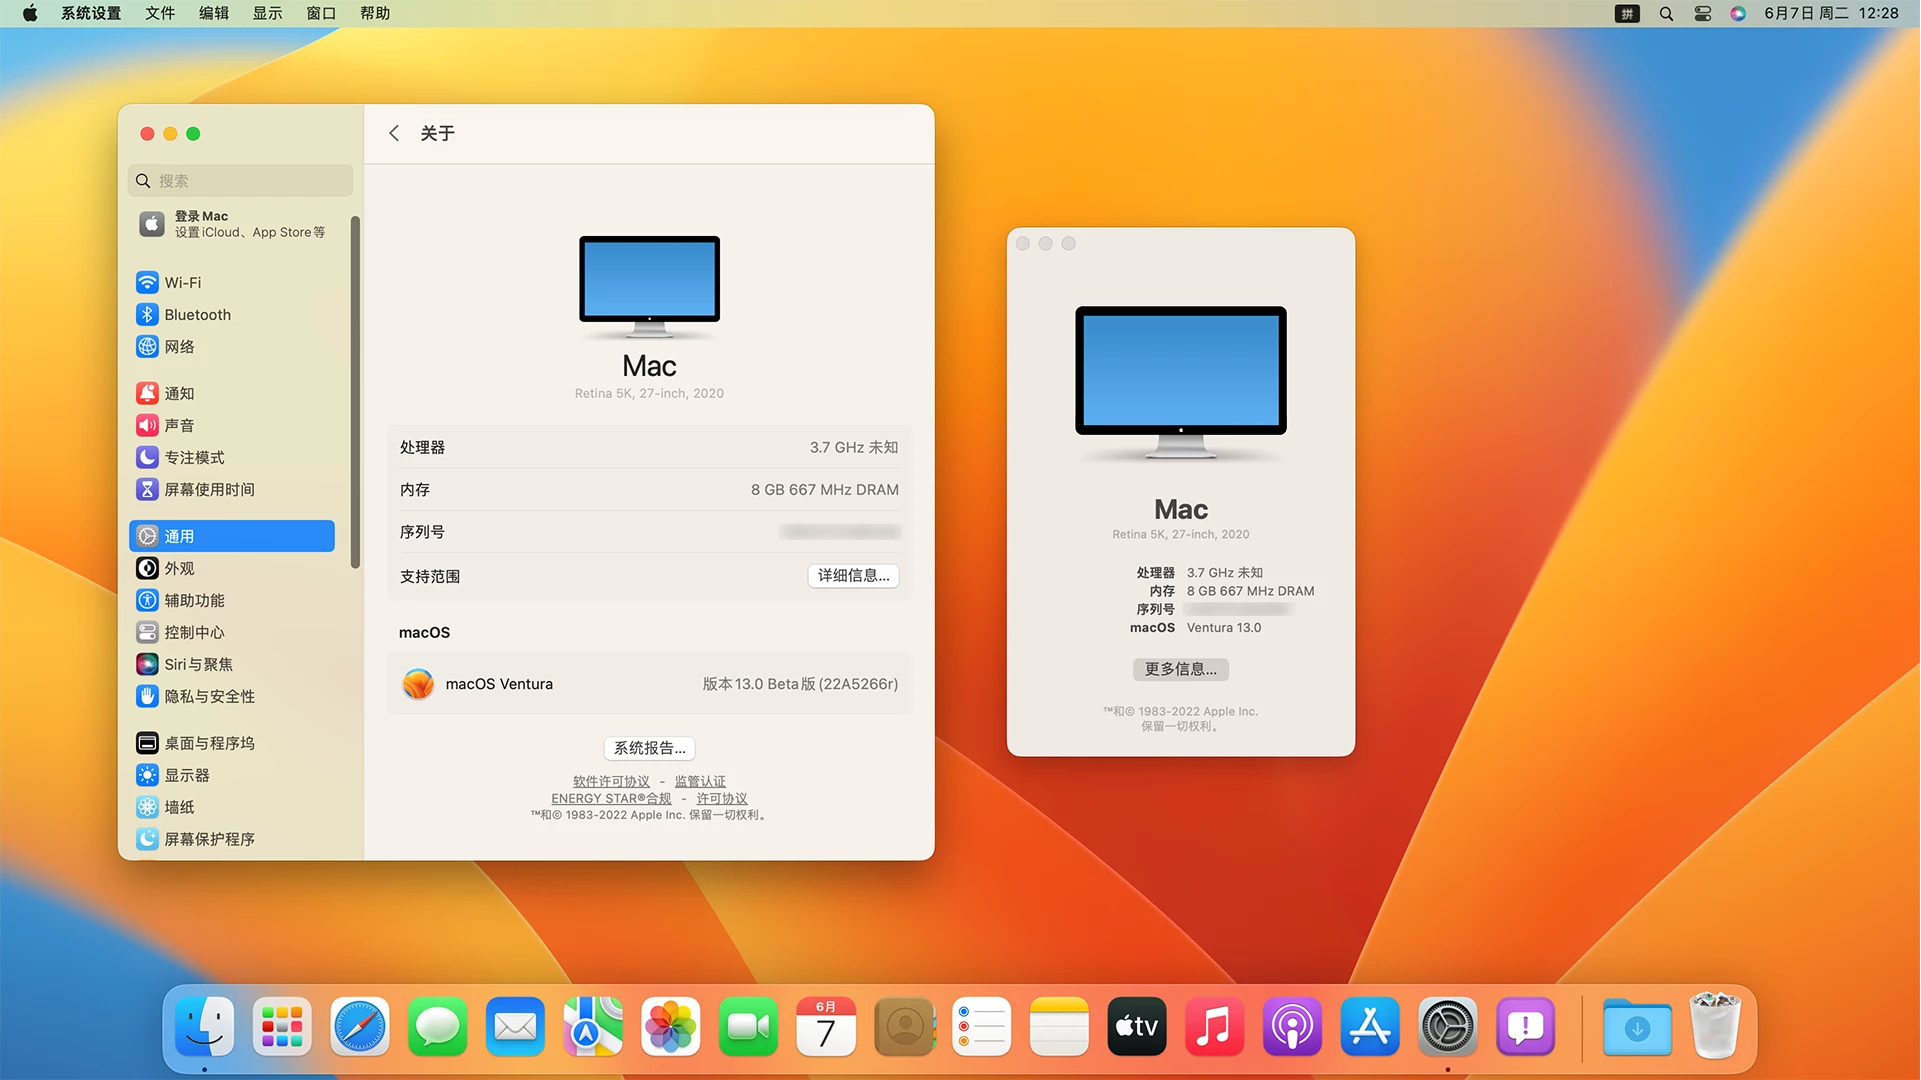 macOS13 Ventura Beta 1(22A5266r) 开